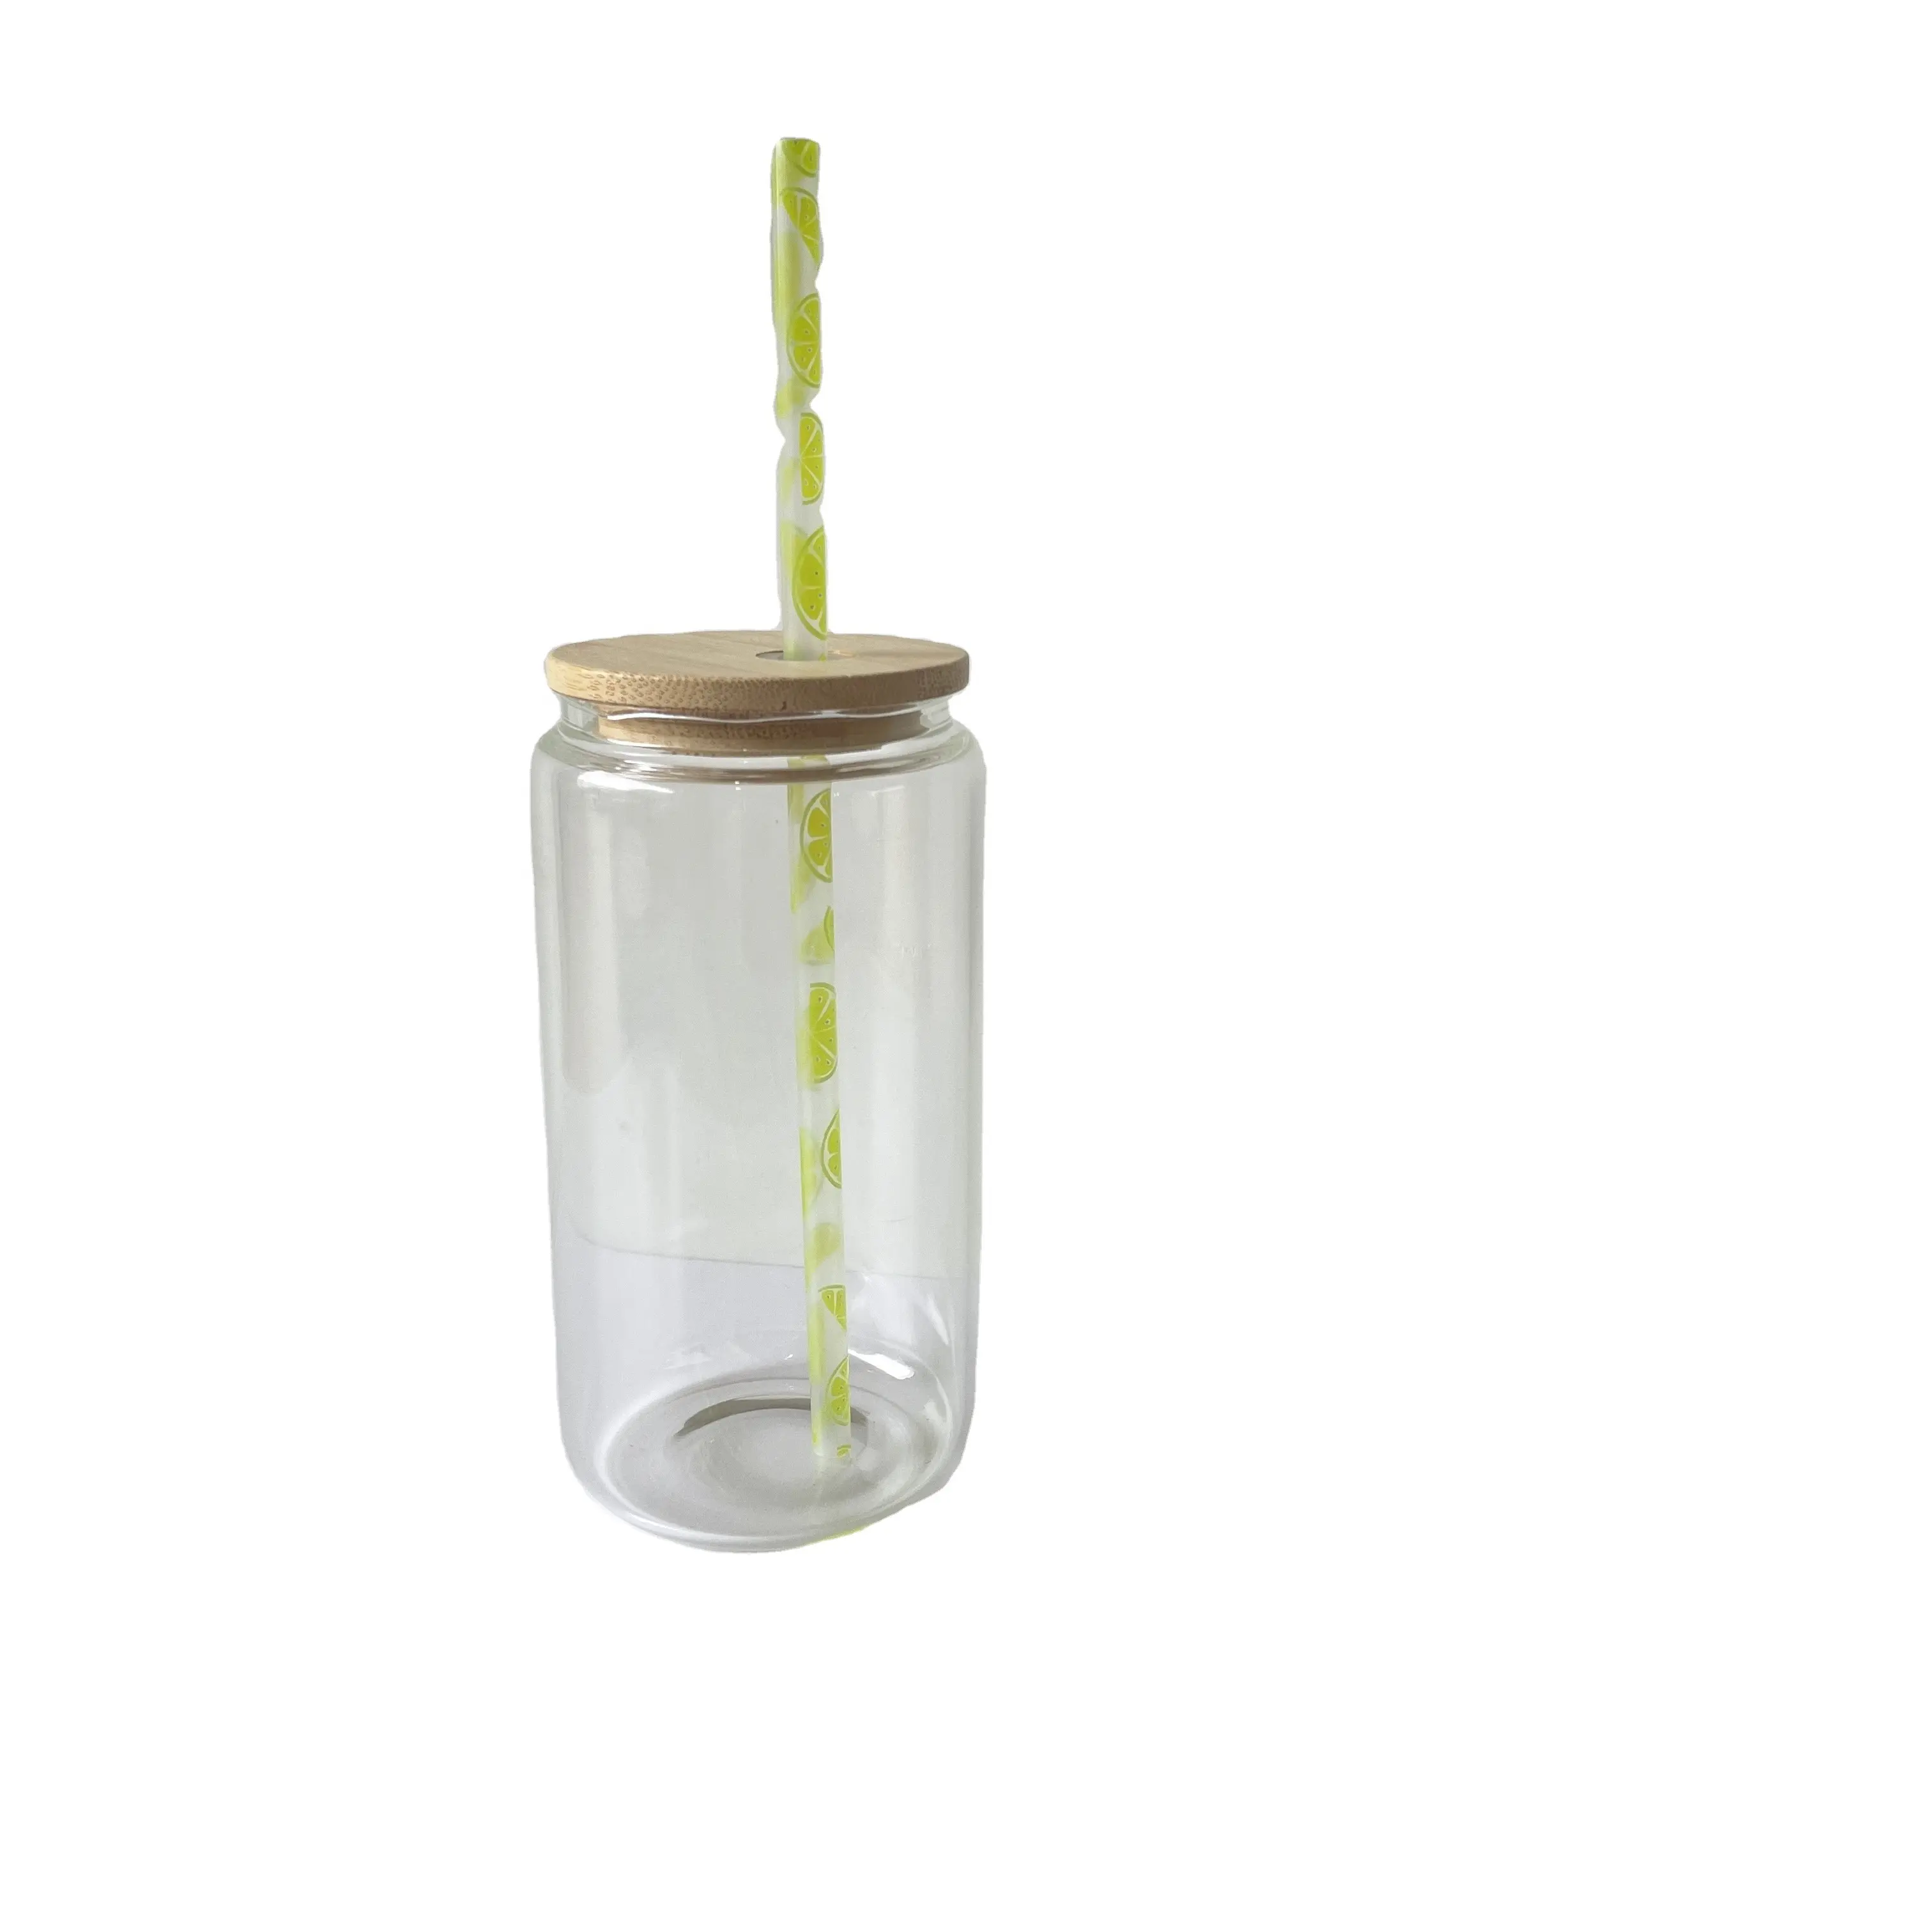 Pajitas reutilizables de plástico para vasos de vidrio, con logotipo de fruta, sandía, girasol, PP, hojas duras, piña, Limón